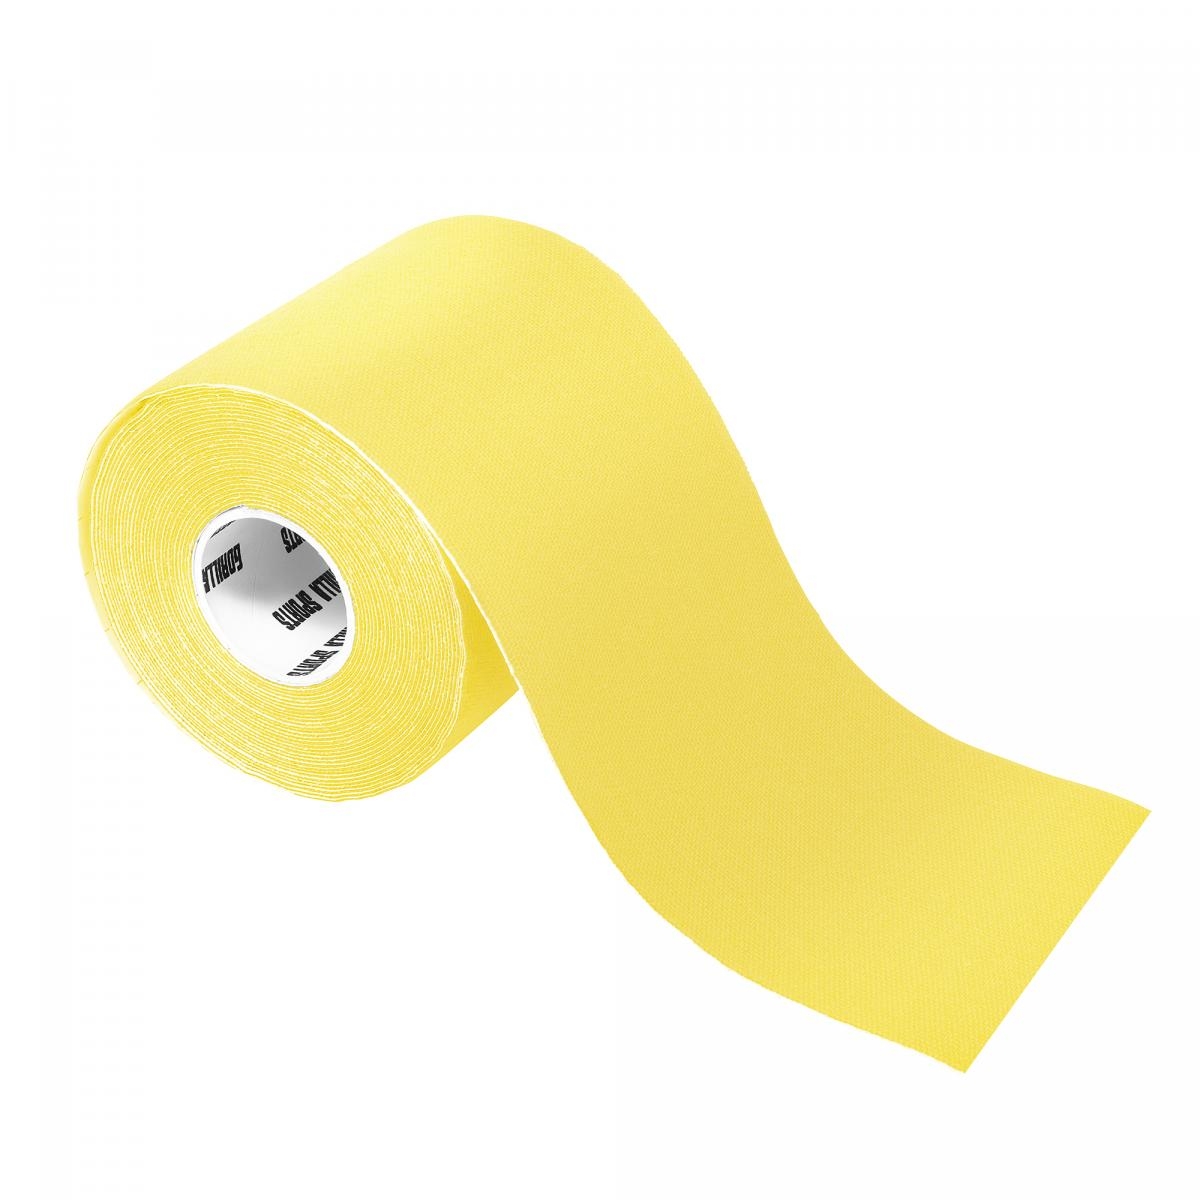 Bande de kinésiologie jaune - rouleau de 5 m - Largeur : 7,5 cm